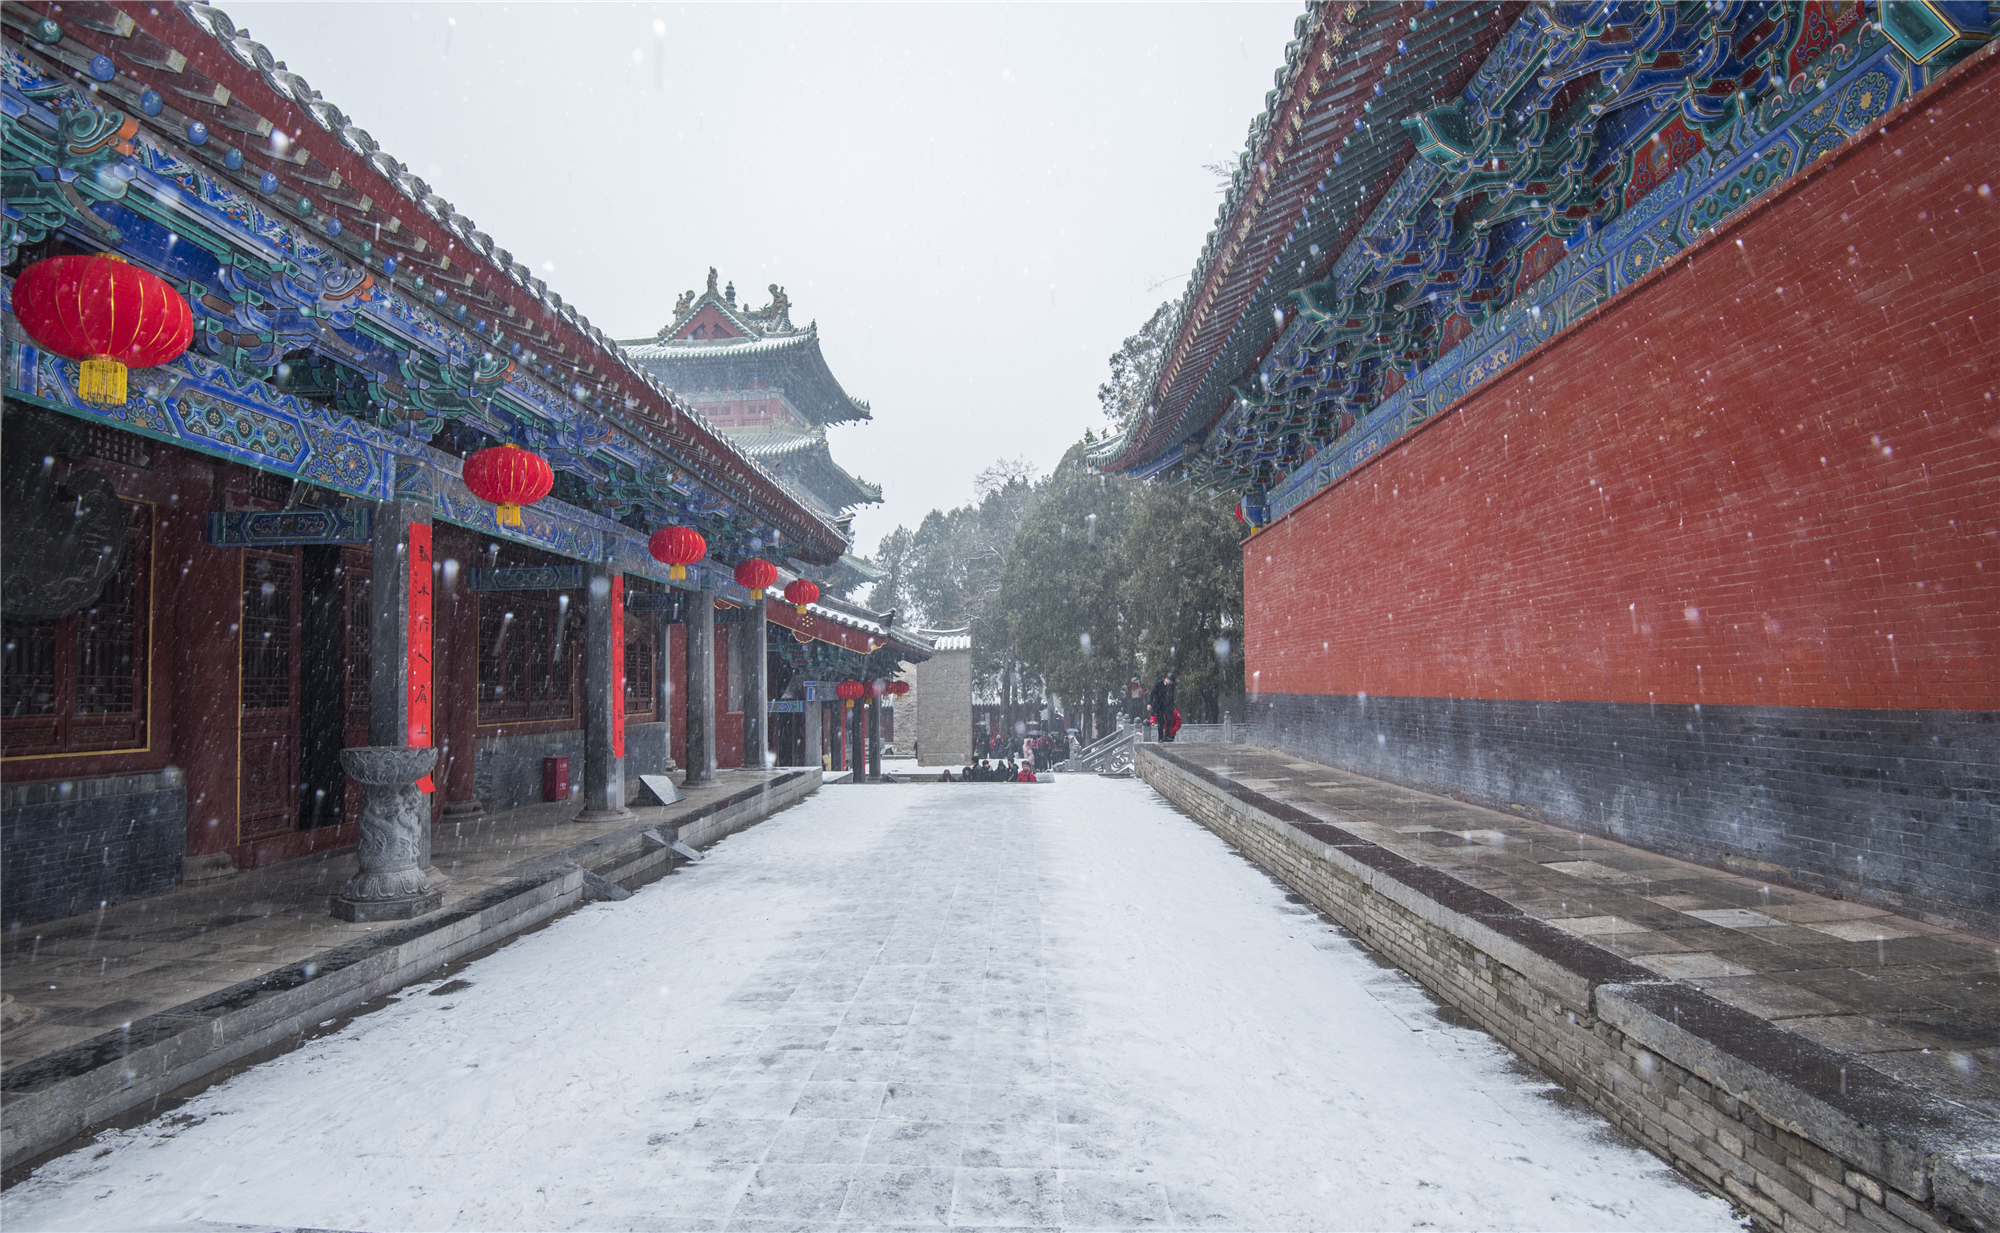 世界文化遗产:河南嵩山少林寺的雪